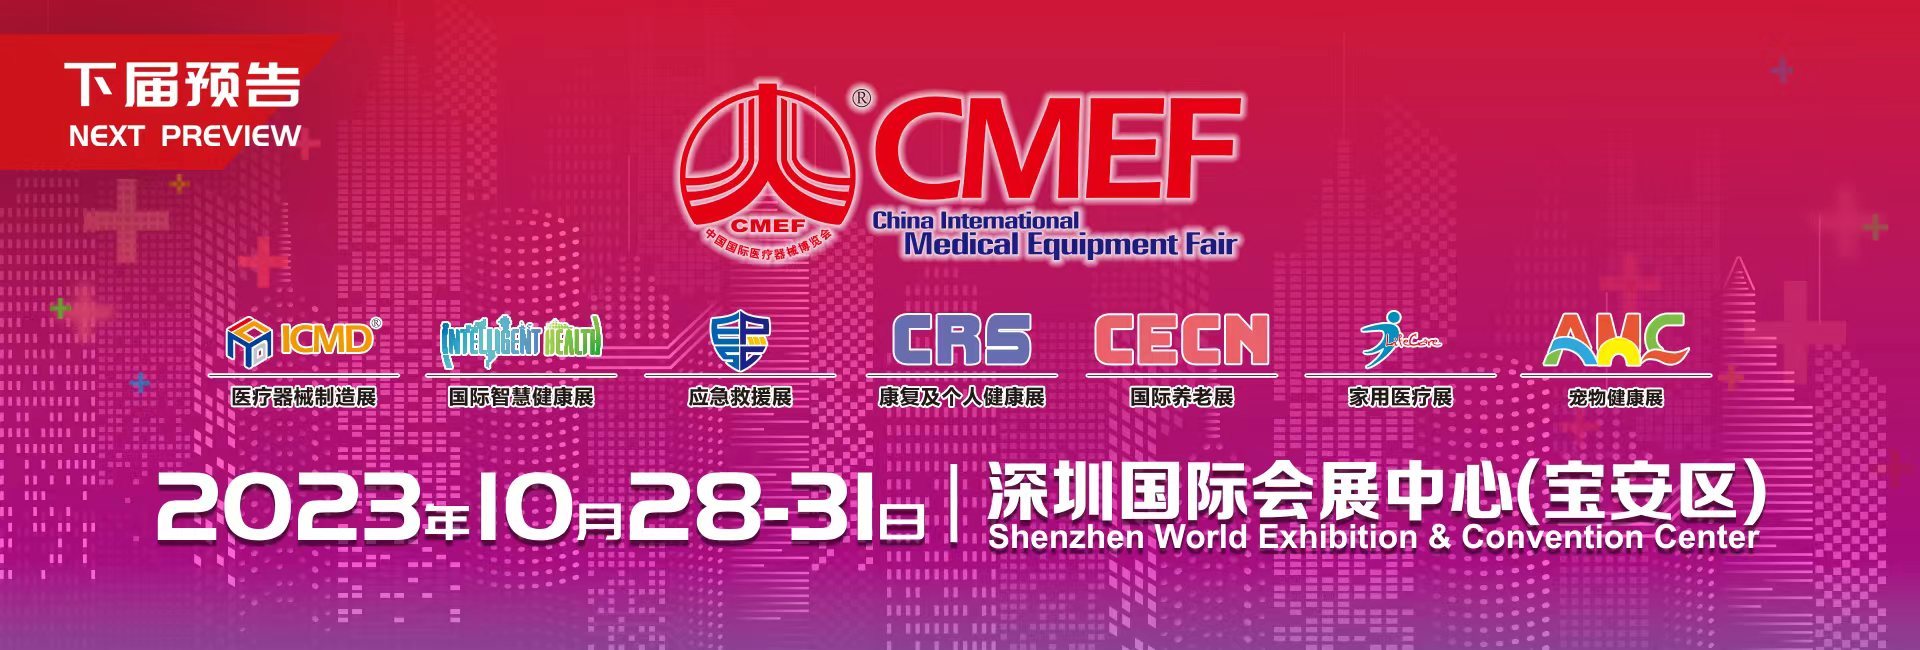 欢迎参加10月28日至31日的安保医用包装2023 CMEF深圳展。